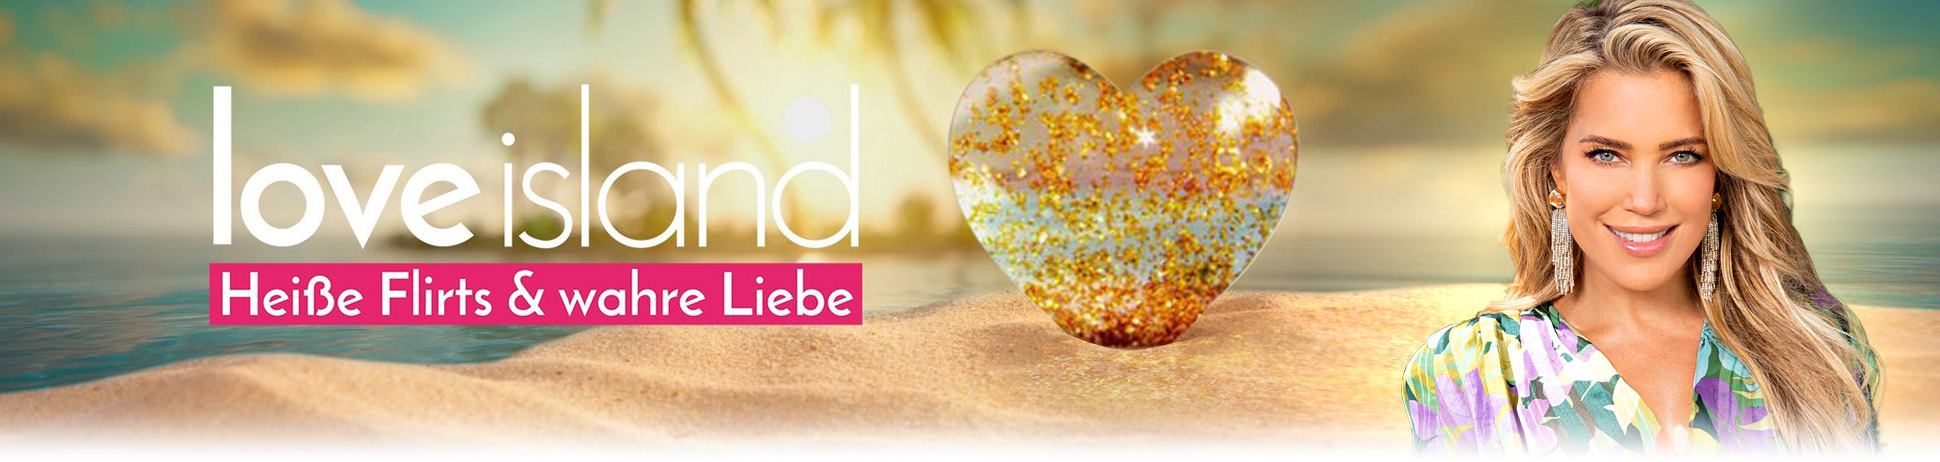 Love Island - Heiße Flirts und wahre Liebe